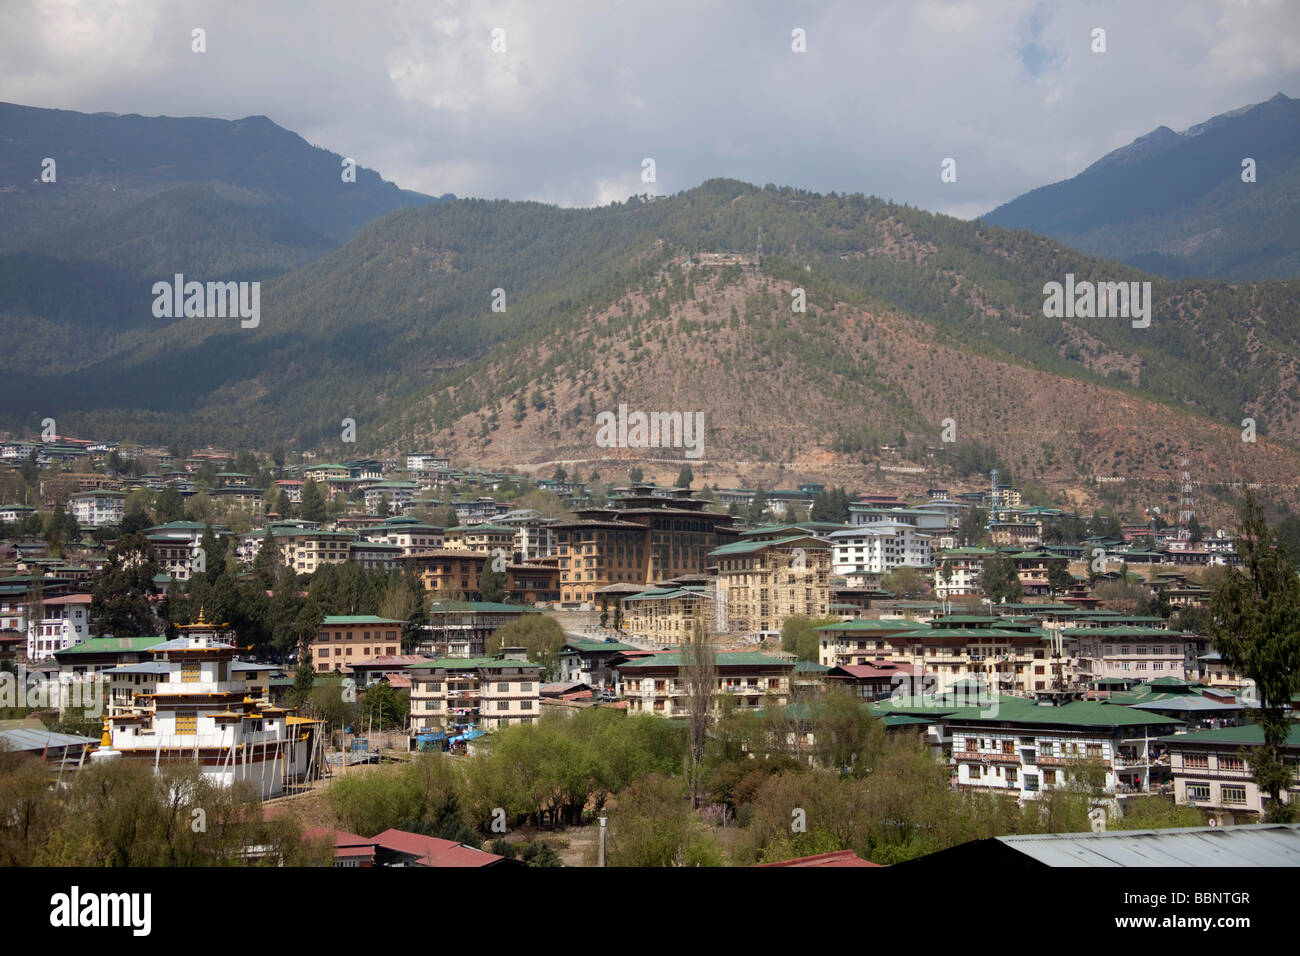 Gesamtansicht der Hauptstadt Thimphu Stadt von Bhutan, sonnigen Frühlingstag, Gründächer Stadtbild. 91054 Bhutan-Thimphu Stockfoto